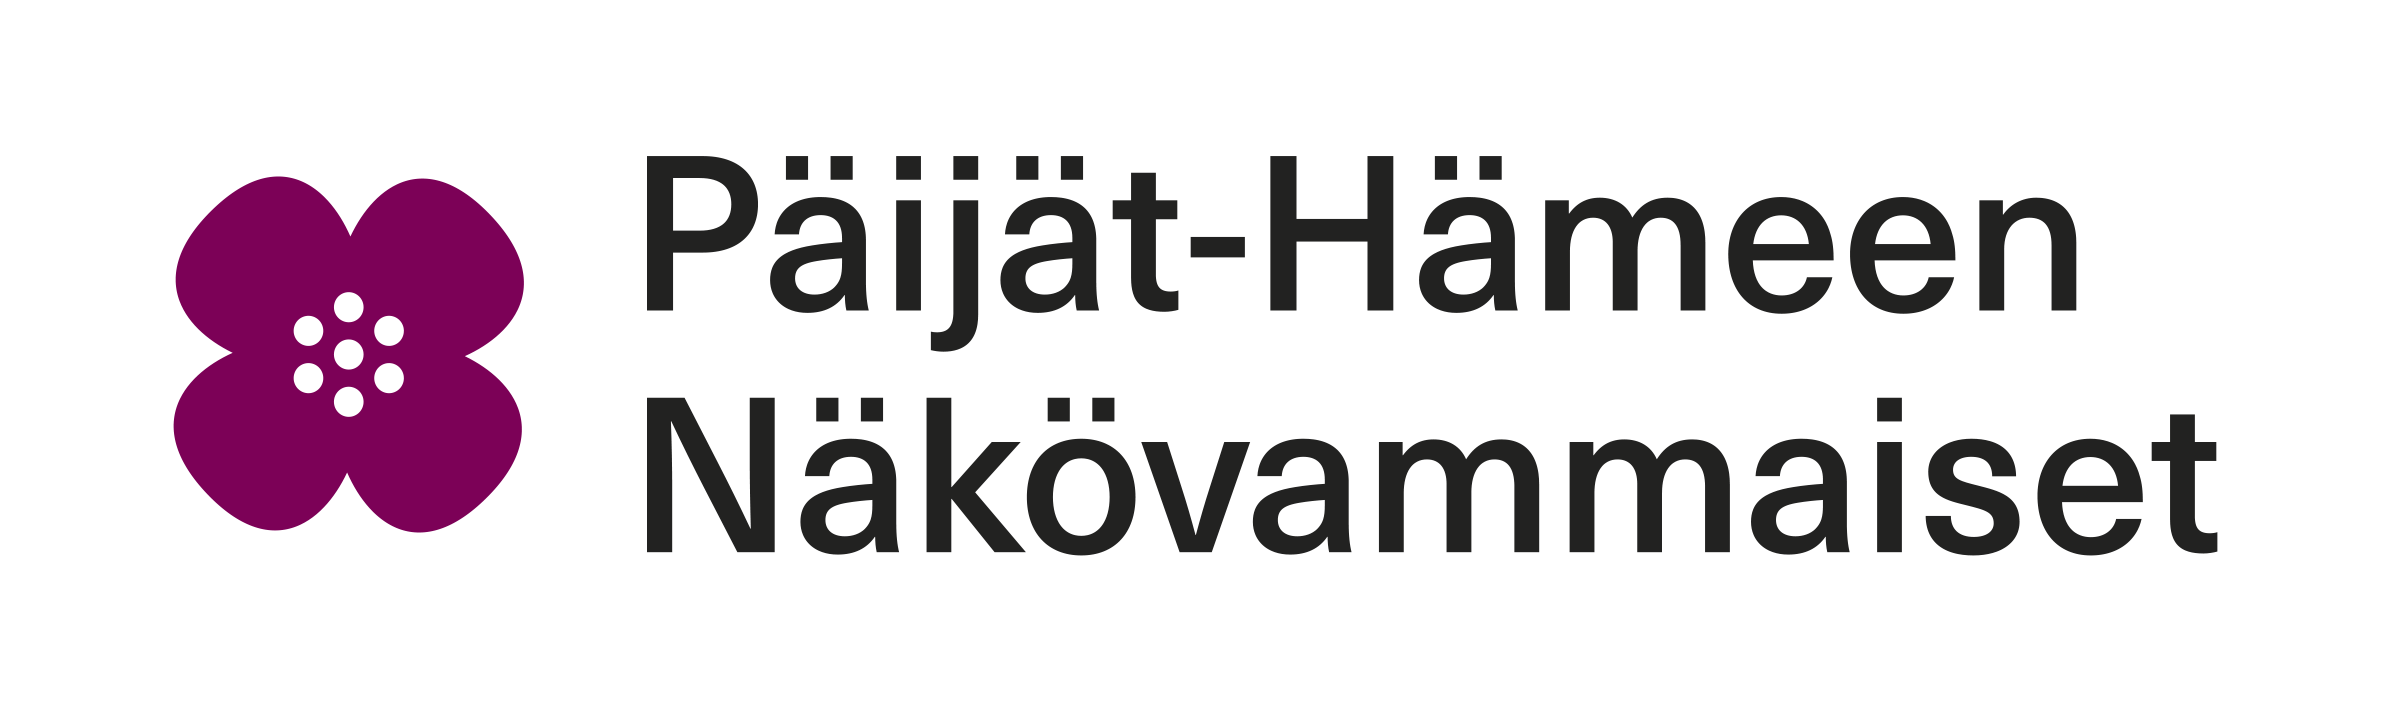 The logo of Päijät-Hämeen Näkövammaiset.